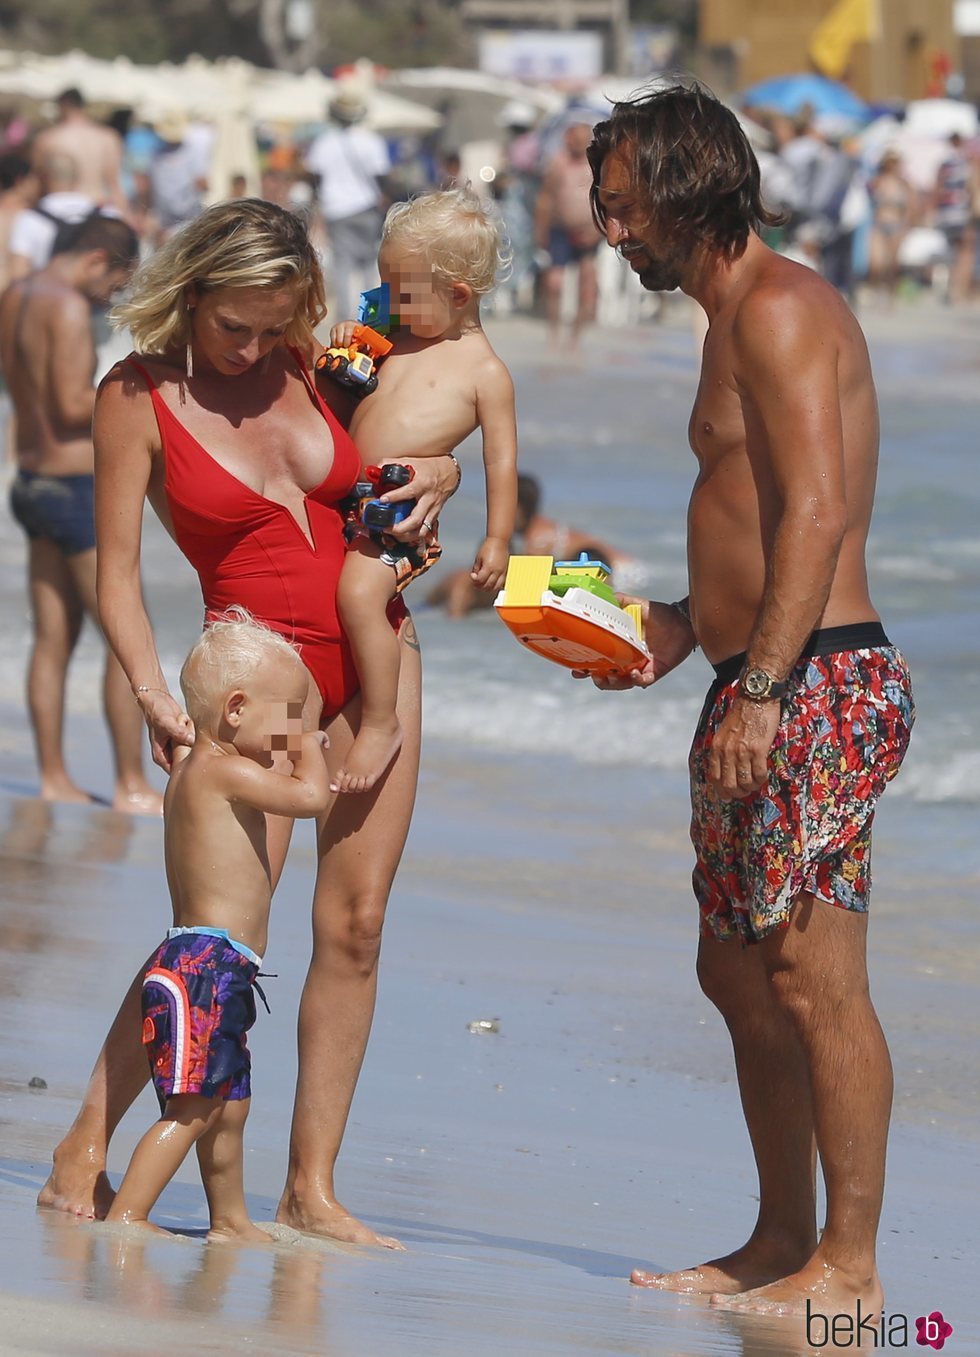 Pirlo con su mujer y sus hijos pequeños durante sus vacaciones familiares en Ibiza